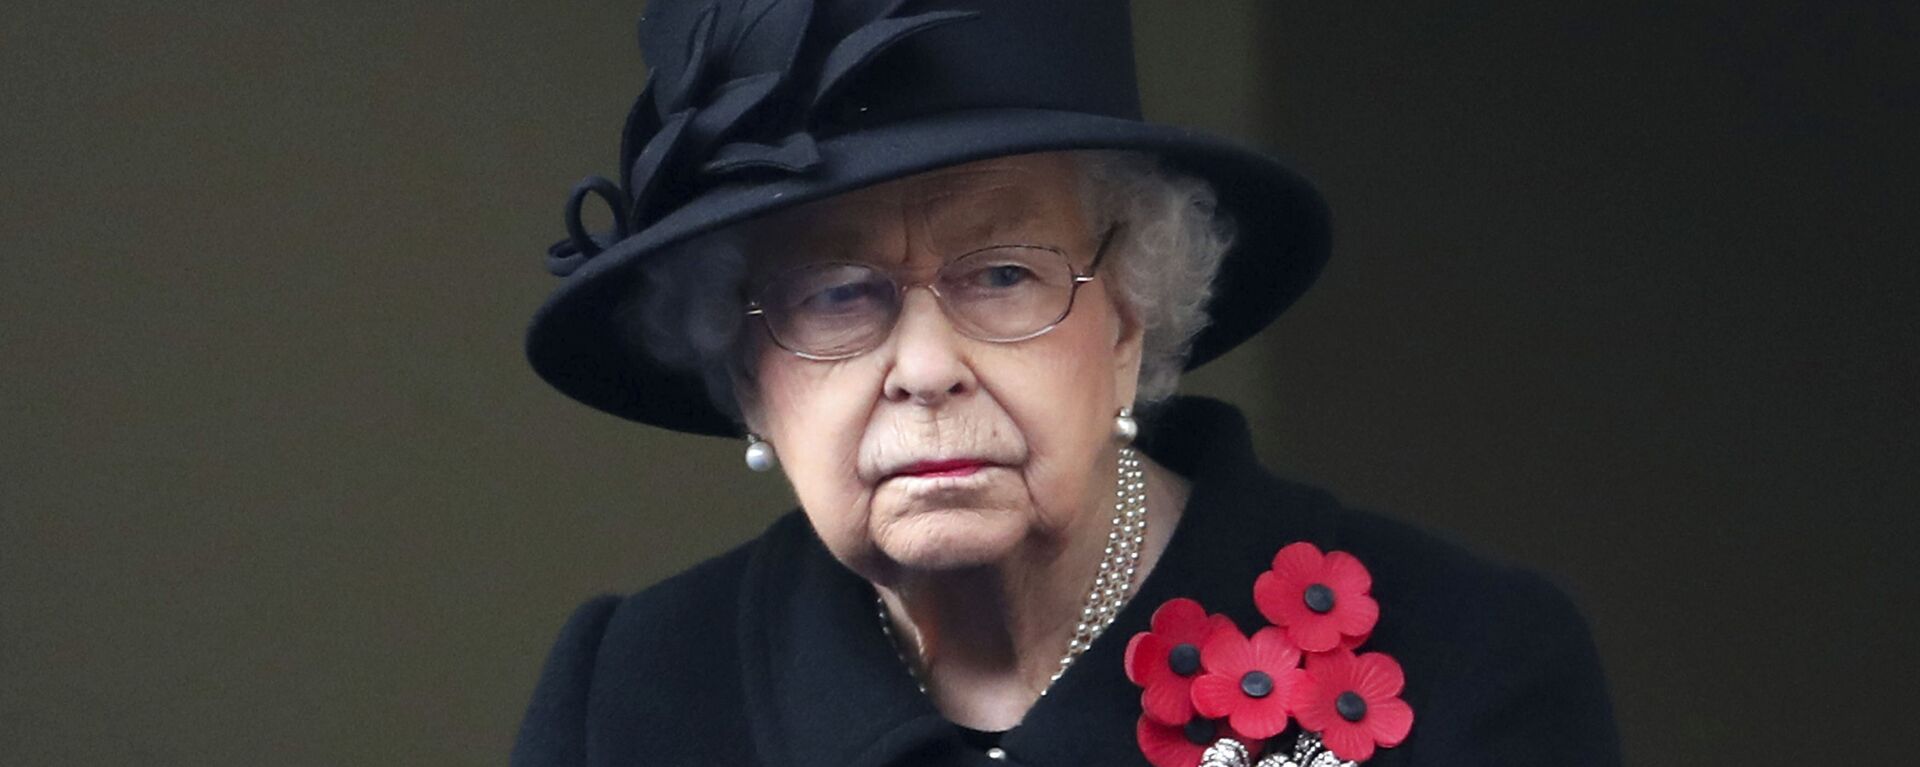 La reina Isabel II durante la ceremonia del Día del Recuerdo 2020 - Sputnik Mundo, 1920, 06.03.2021